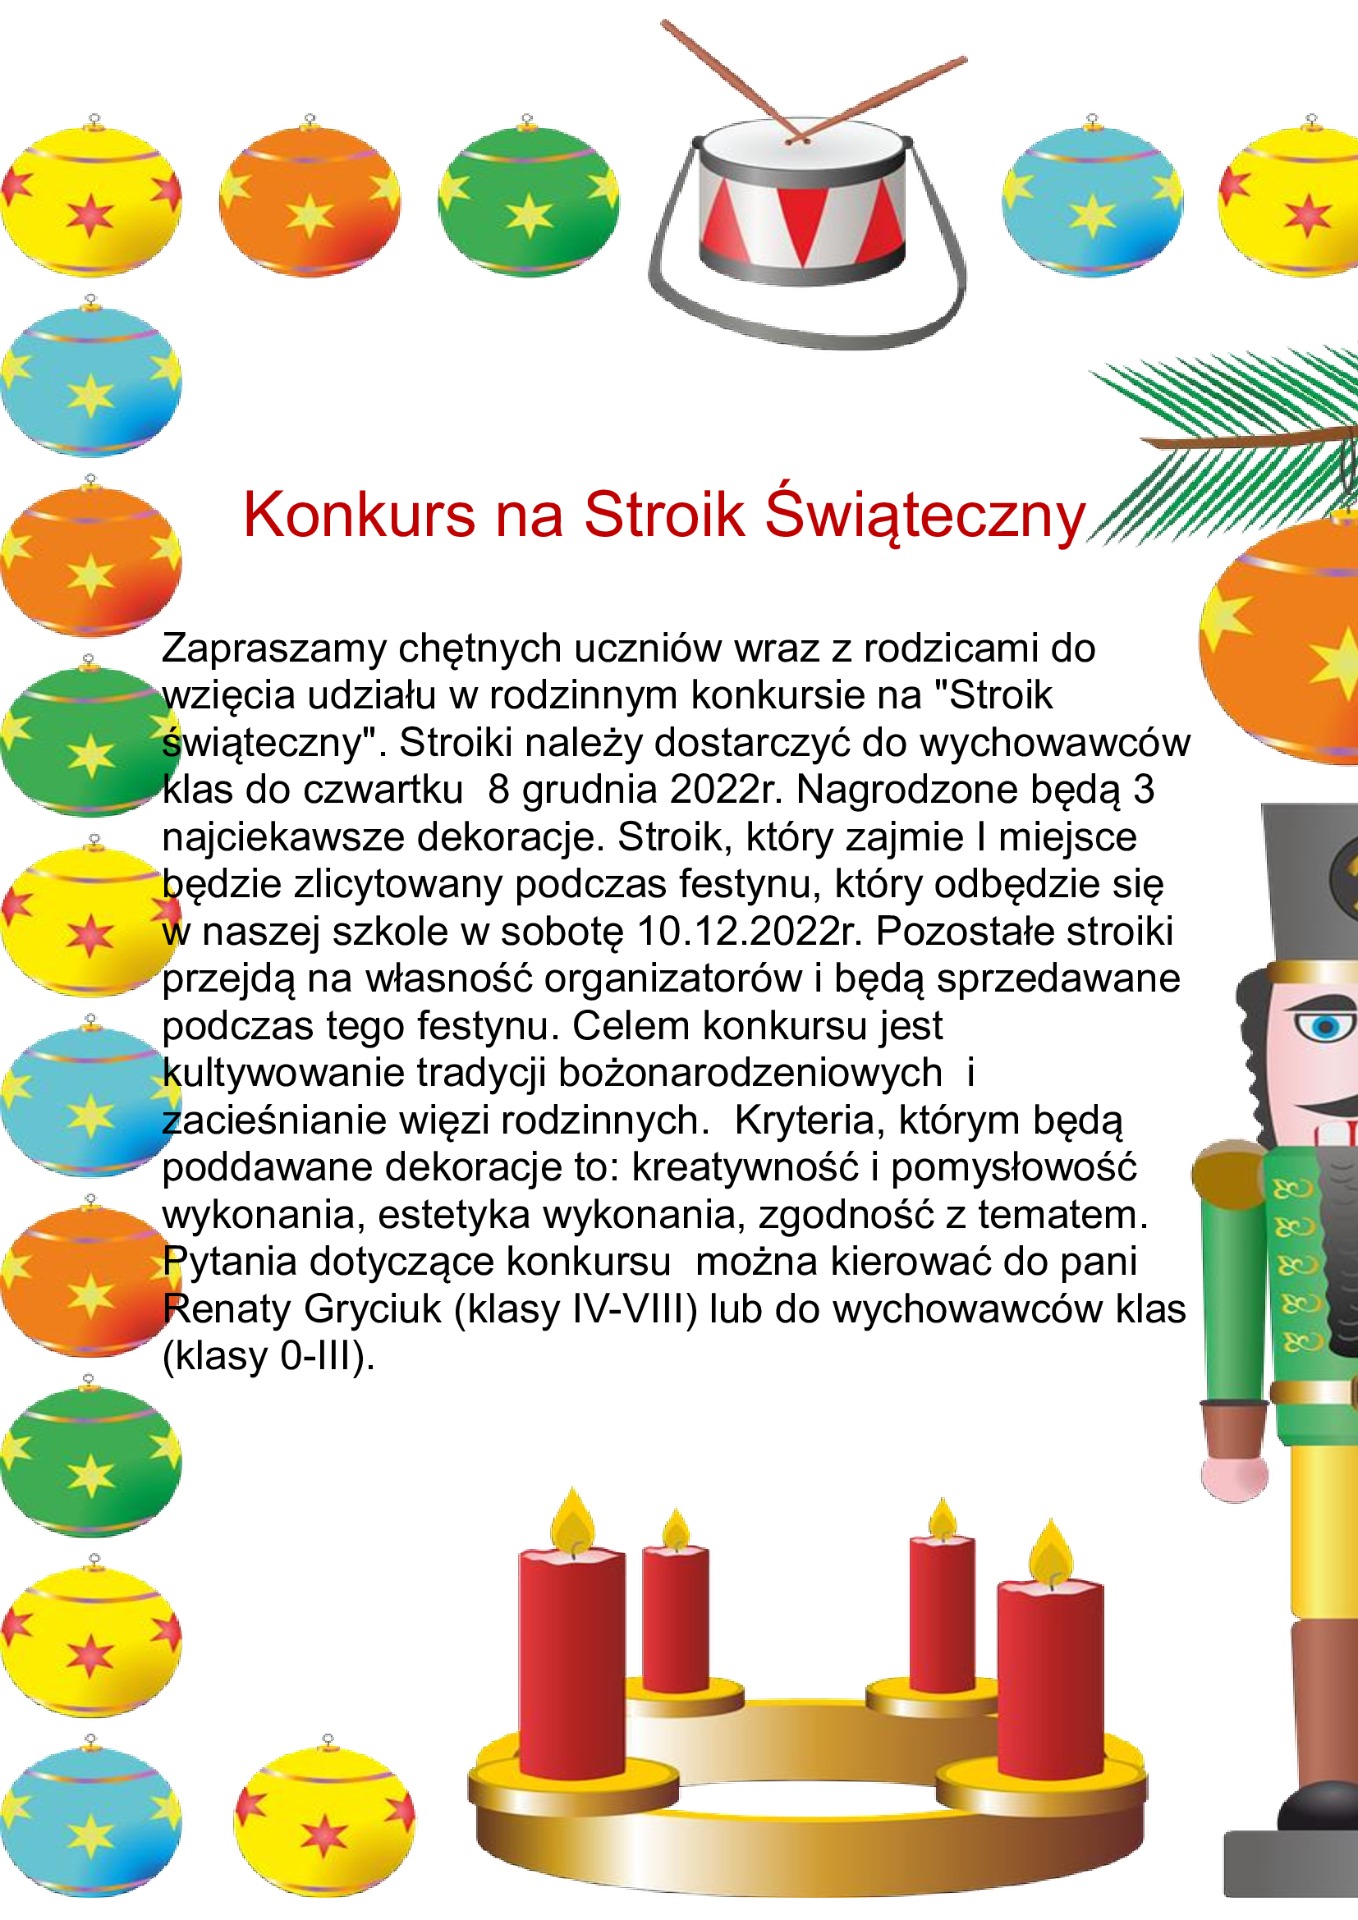 Konkurs na stroik świąteczny, który odbędzie się 10 grudnia 2022 roku w Szkole, prace należy przynosić do pani Renaty Gryciuk